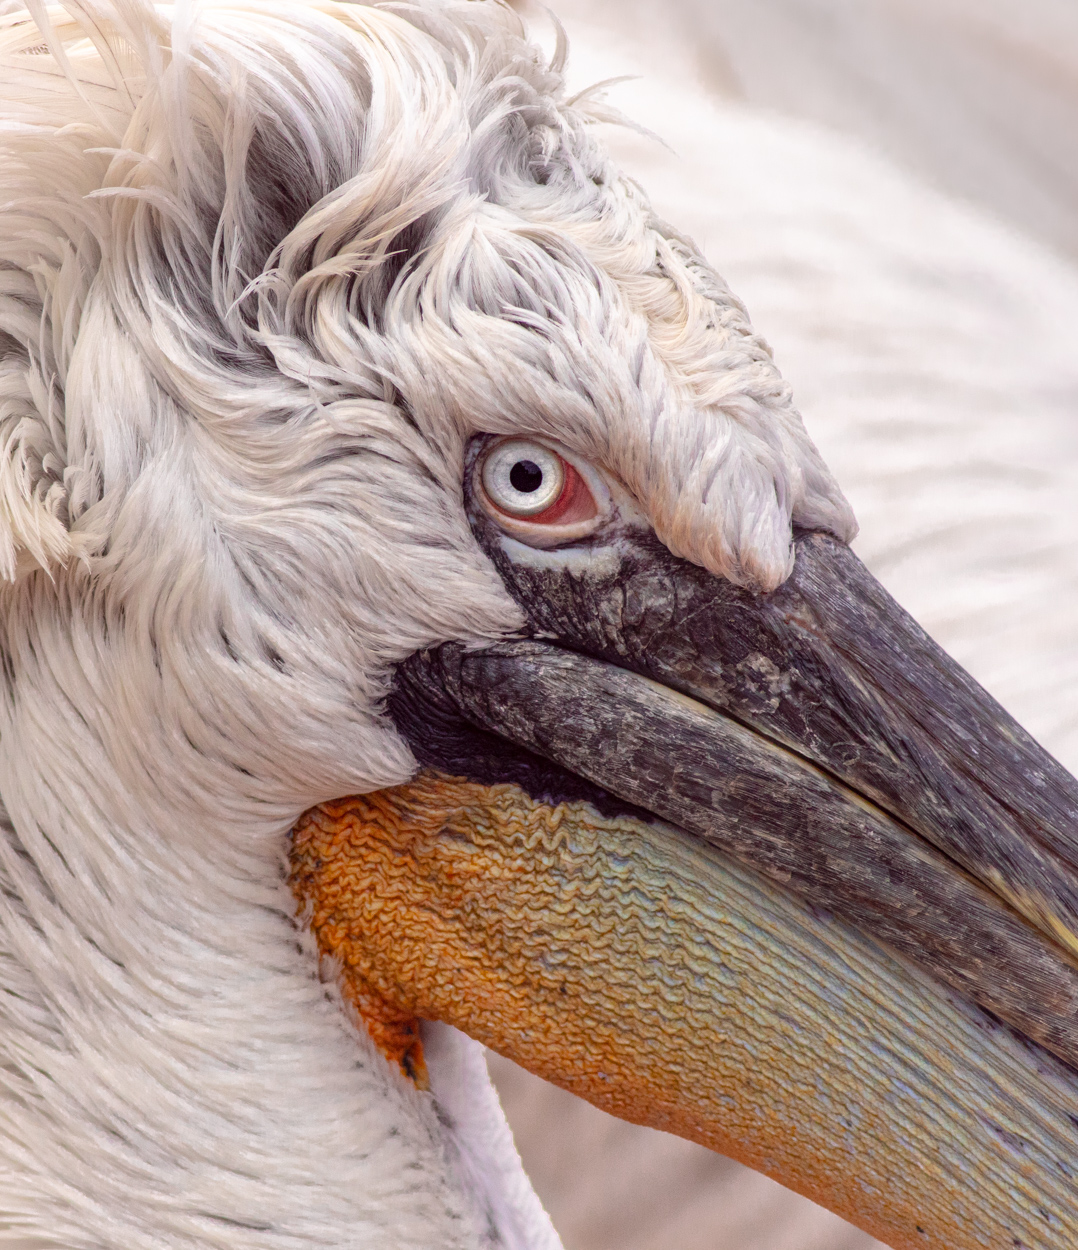 Pelican’s Eye